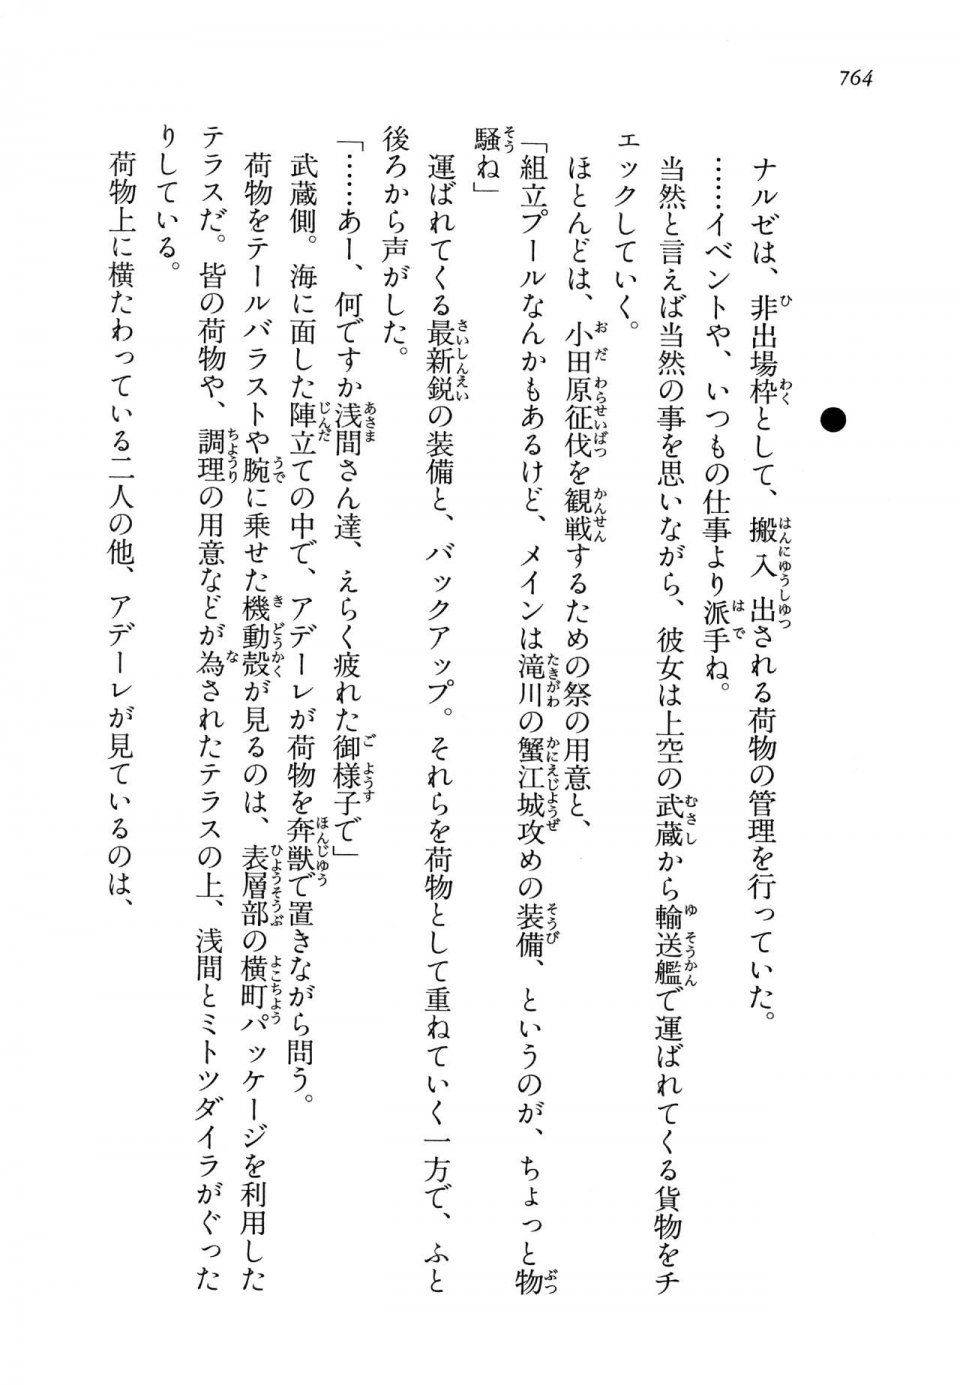 Kyoukai Senjou no Horizon LN Vol 14(6B) - Photo #764